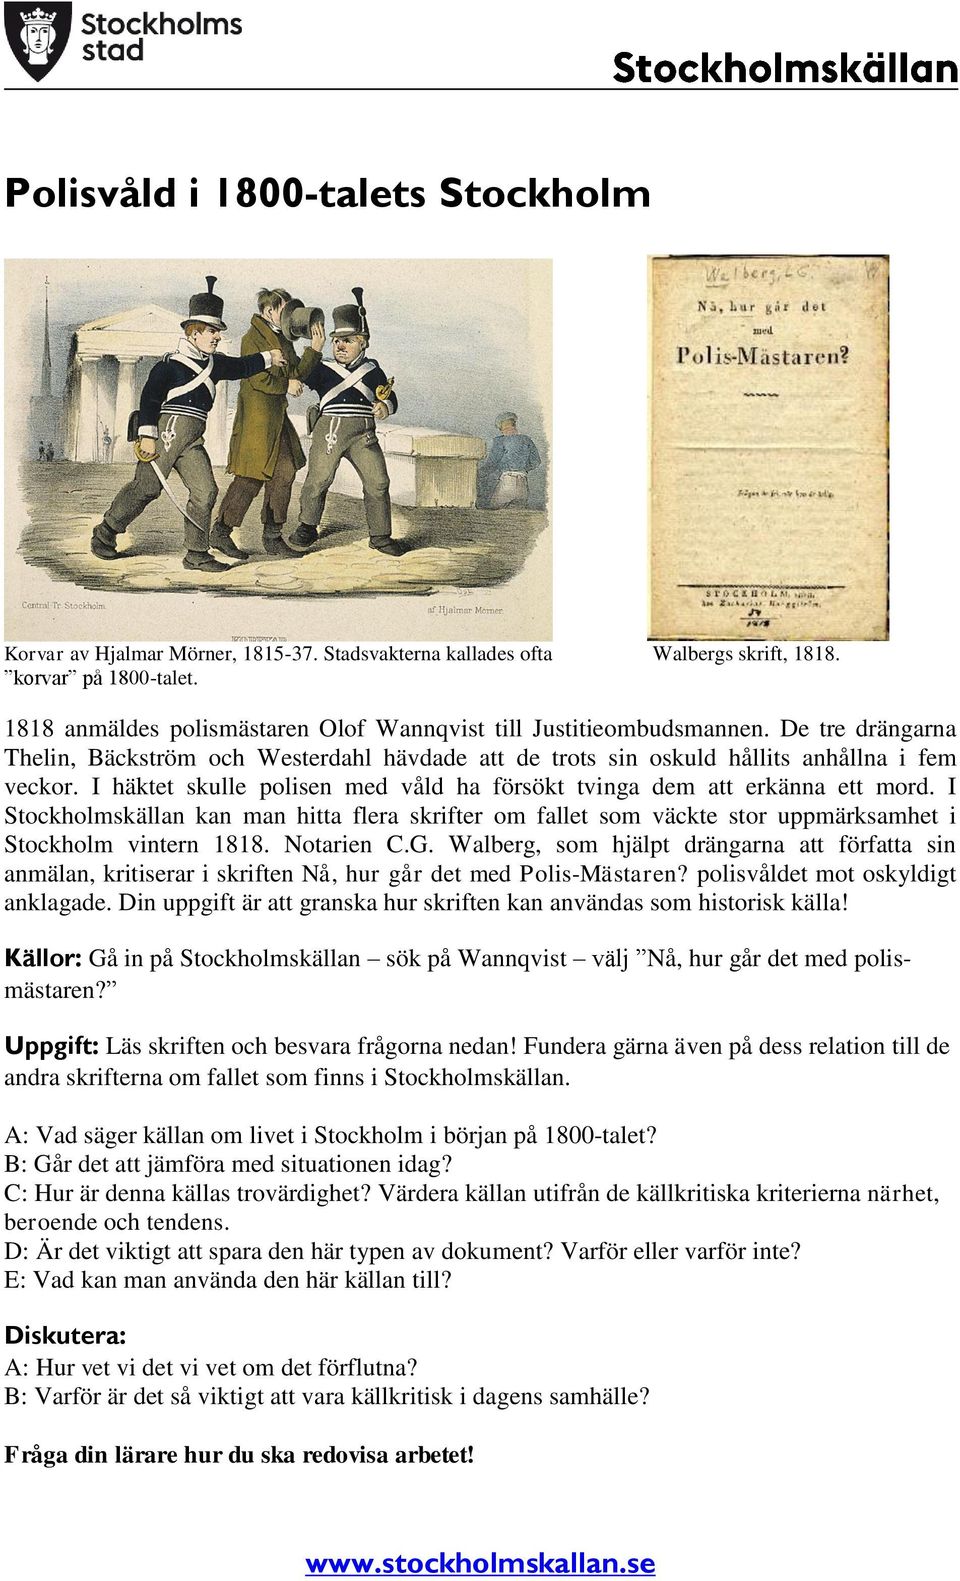 I häktet skulle polisen med våld ha försökt tvinga dem att erkänna ett mord. I Stockholmskällan kan man hitta flera skrifter om fallet som väckte stor uppmärksamhet i Stockholm vintern 1818.